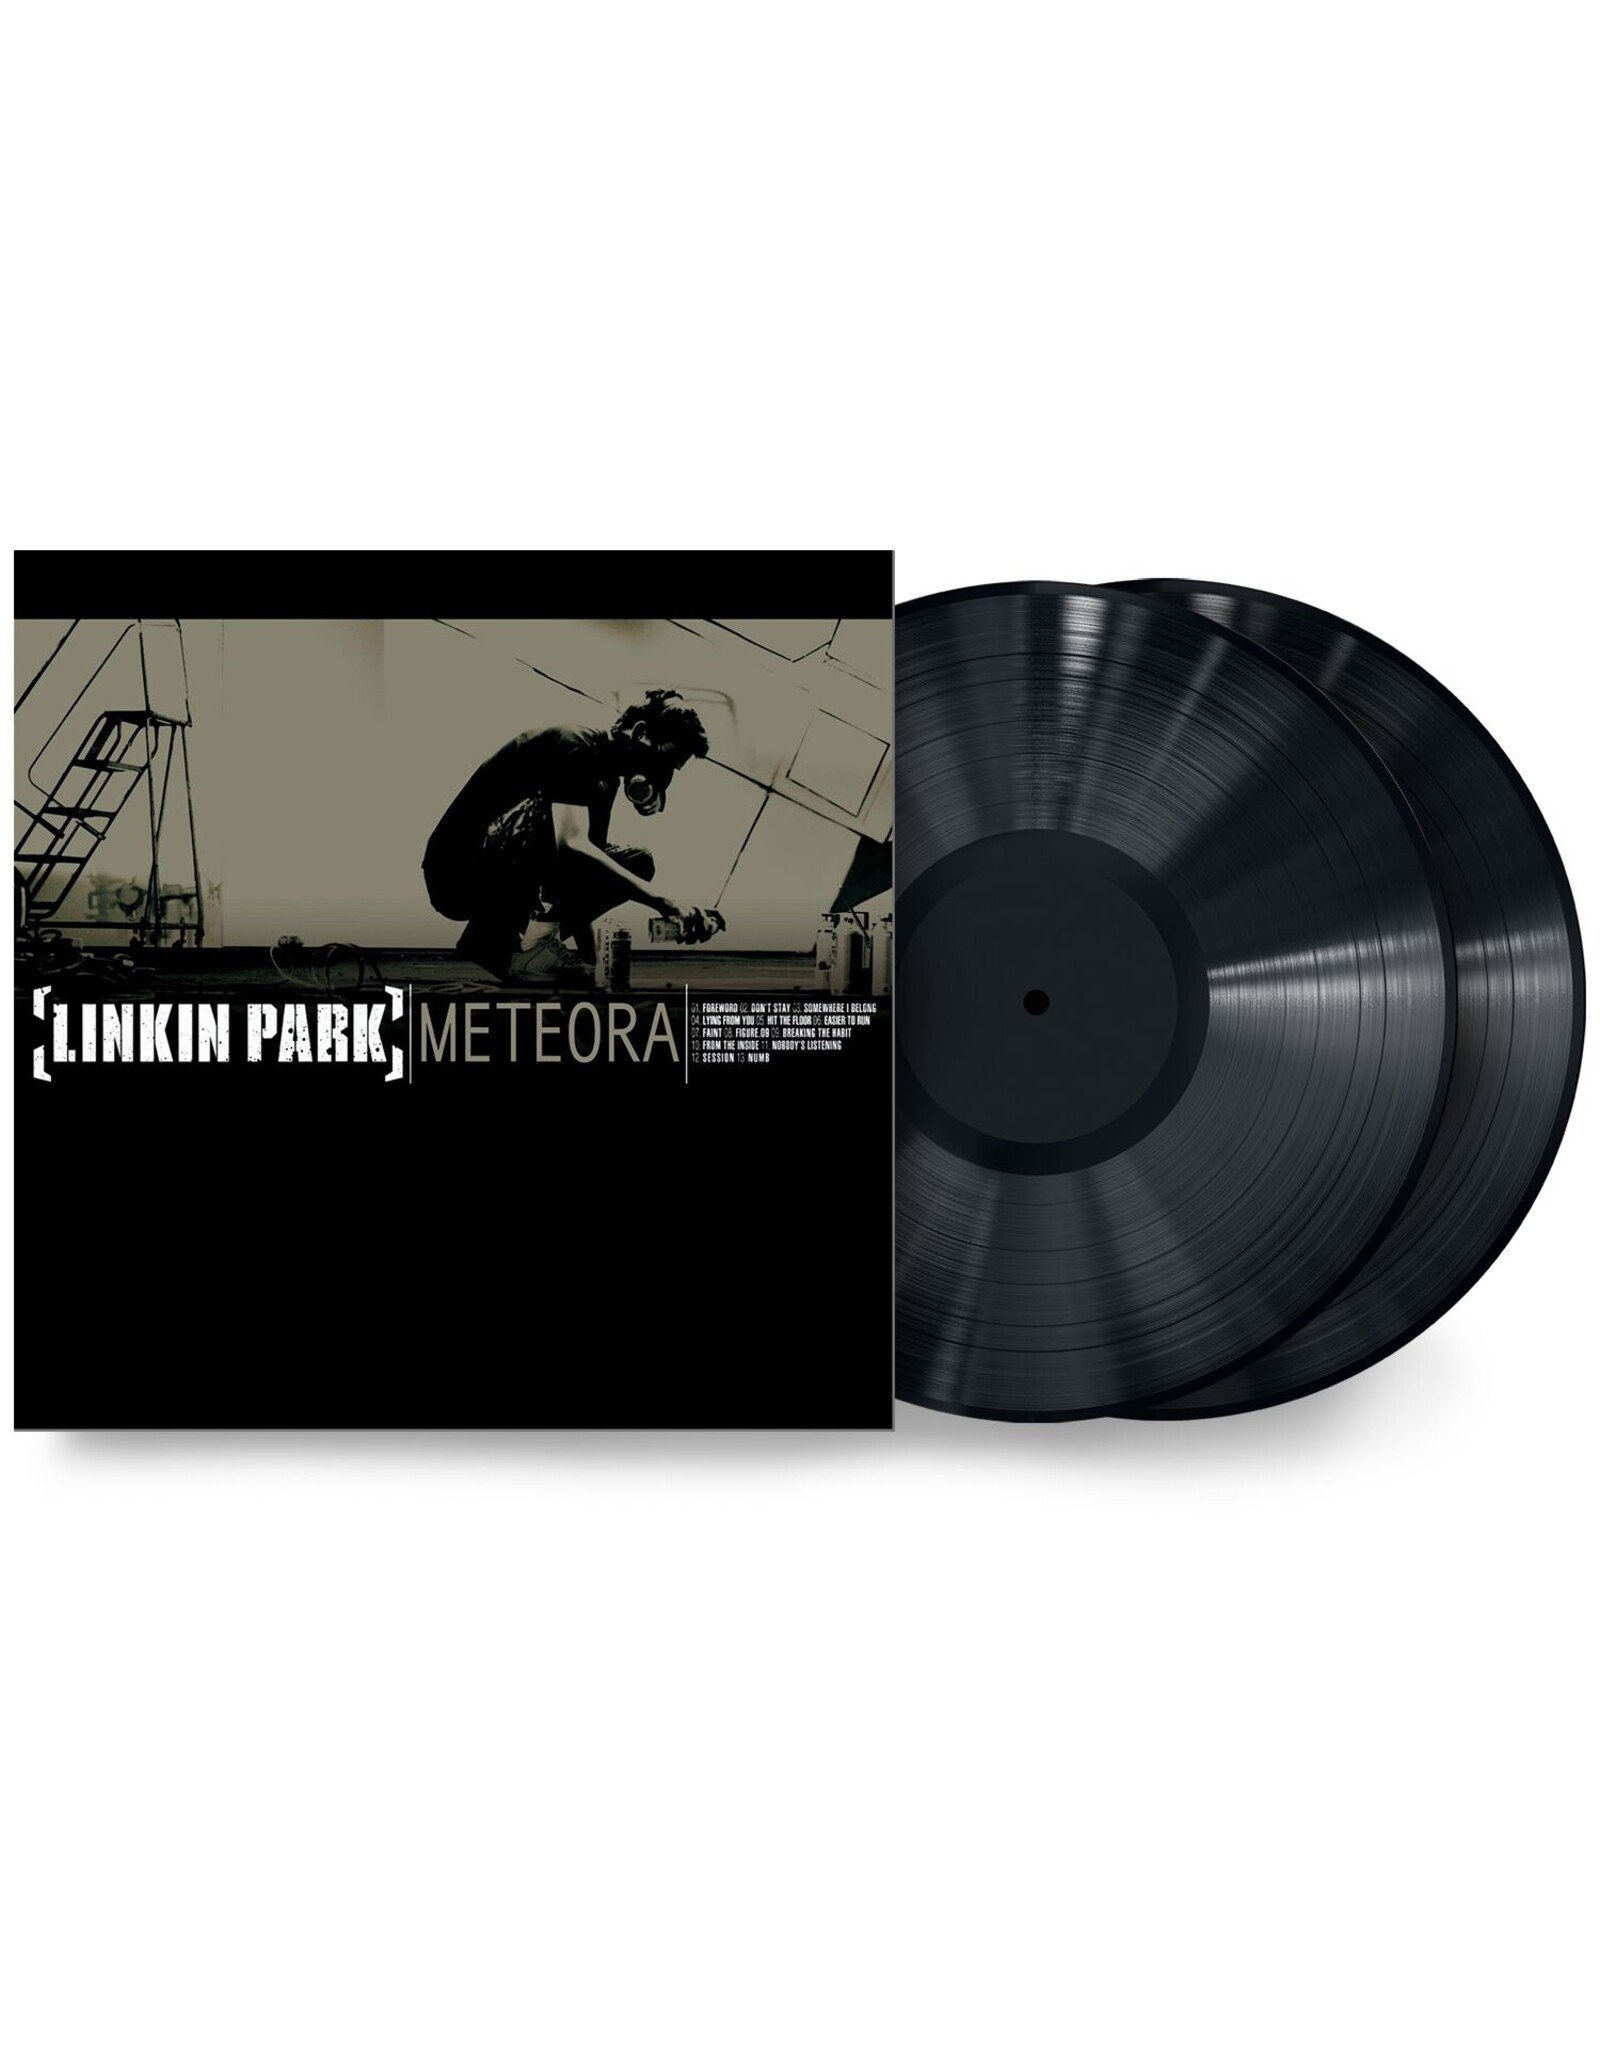 Linkin Park - Meteora (Vinyl LP) - Amoeba Music